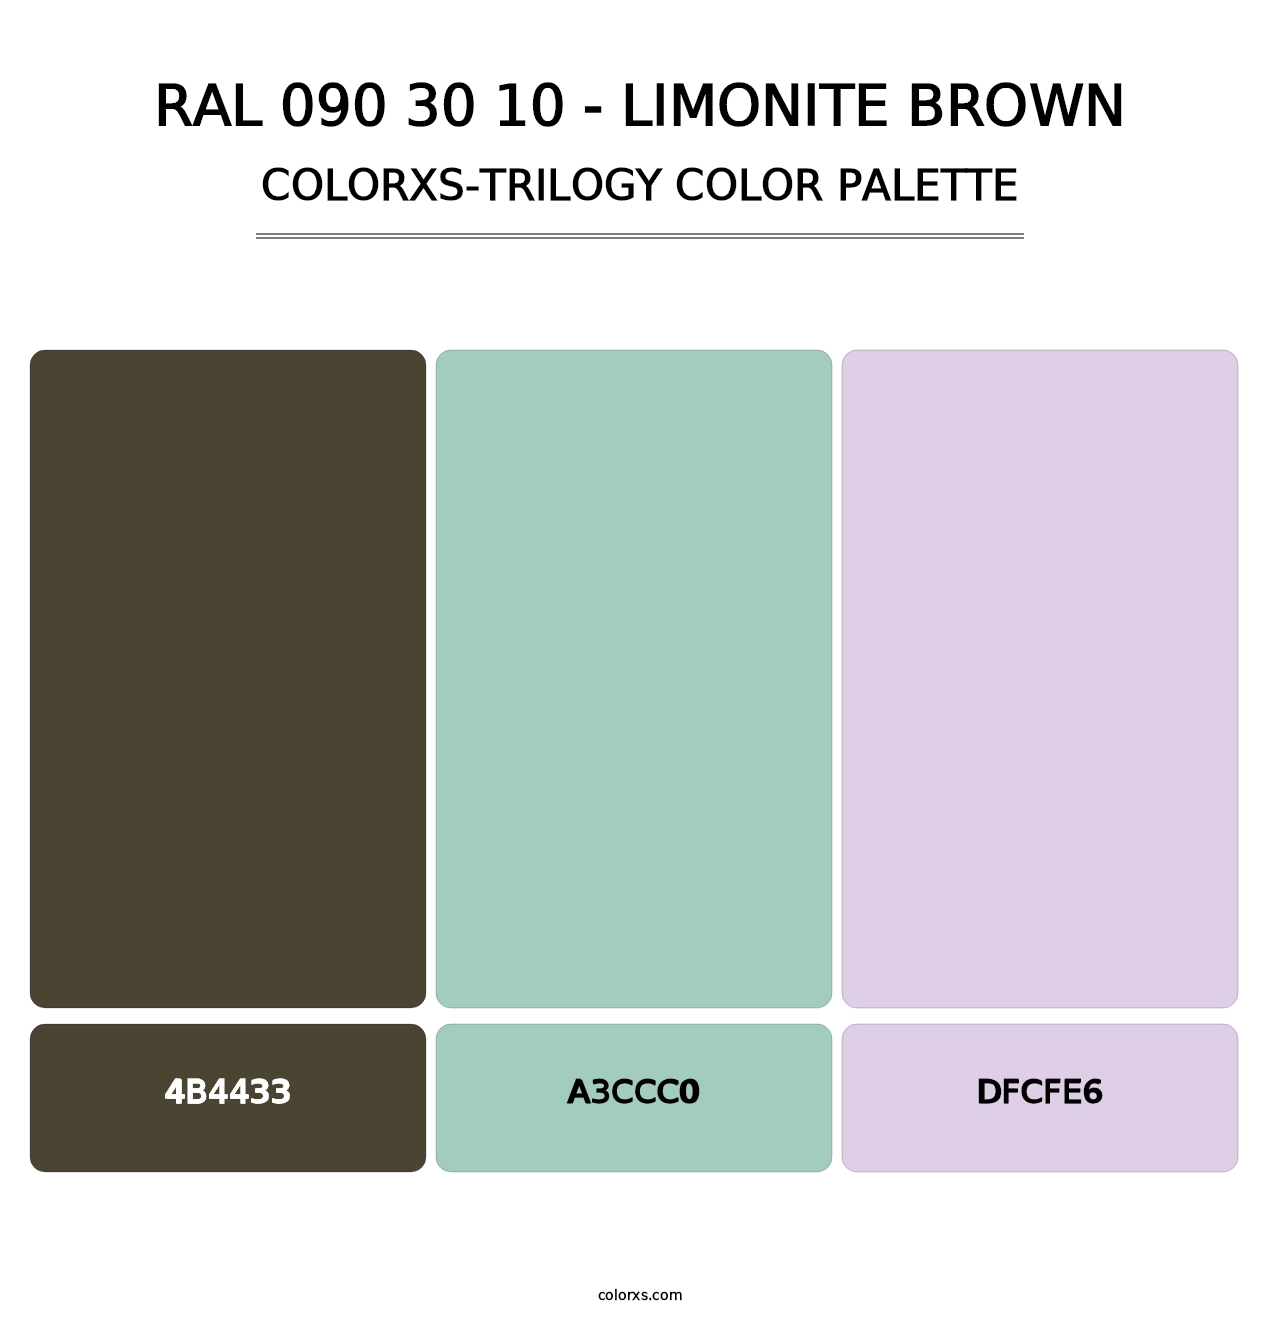 RAL 090 30 10 - Limonite Brown - Colorxs Trilogy Palette